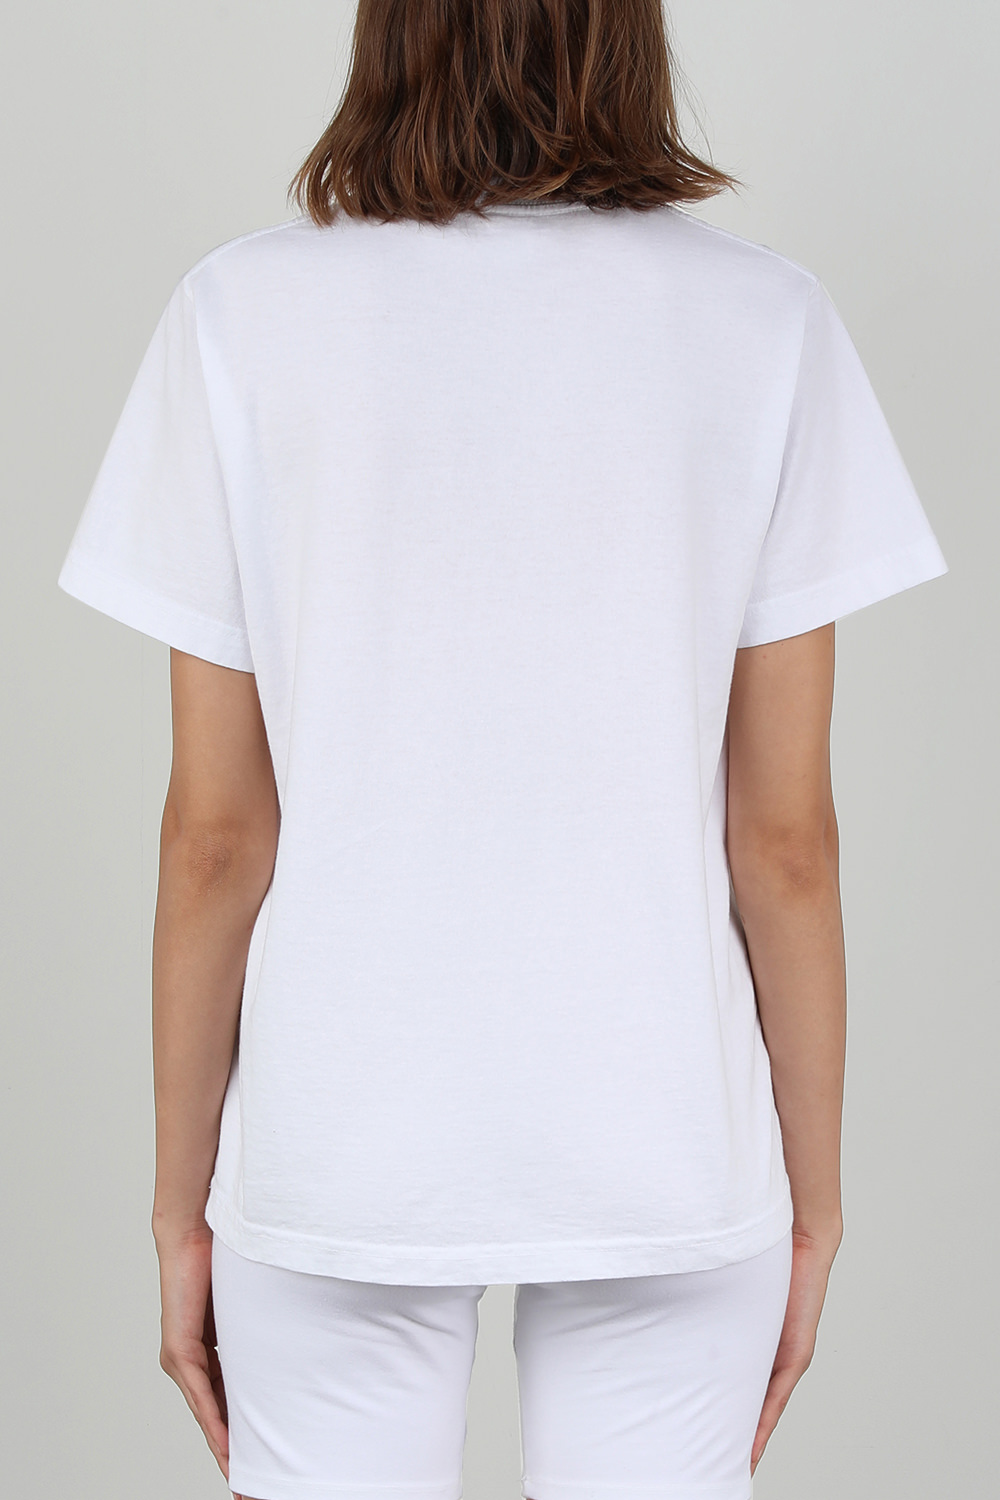 חולצת טי עם הדפס בלבן וירוק SPORTY & RICH